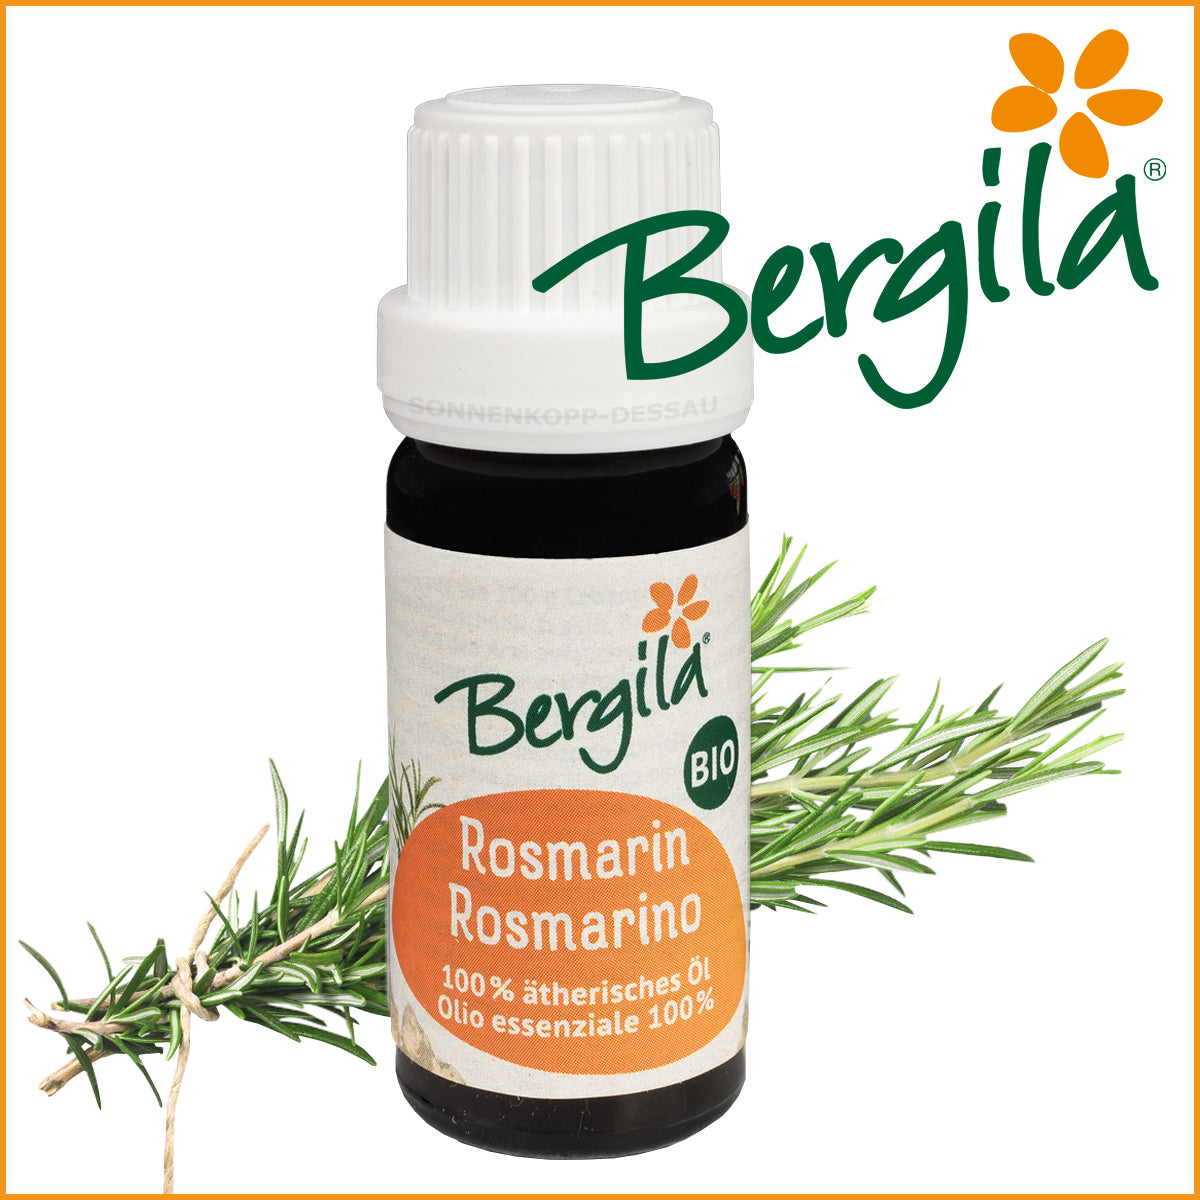 ROSMARIN - Bergila ® BIO ätherisches Öl - Rosmarinöl TIROL